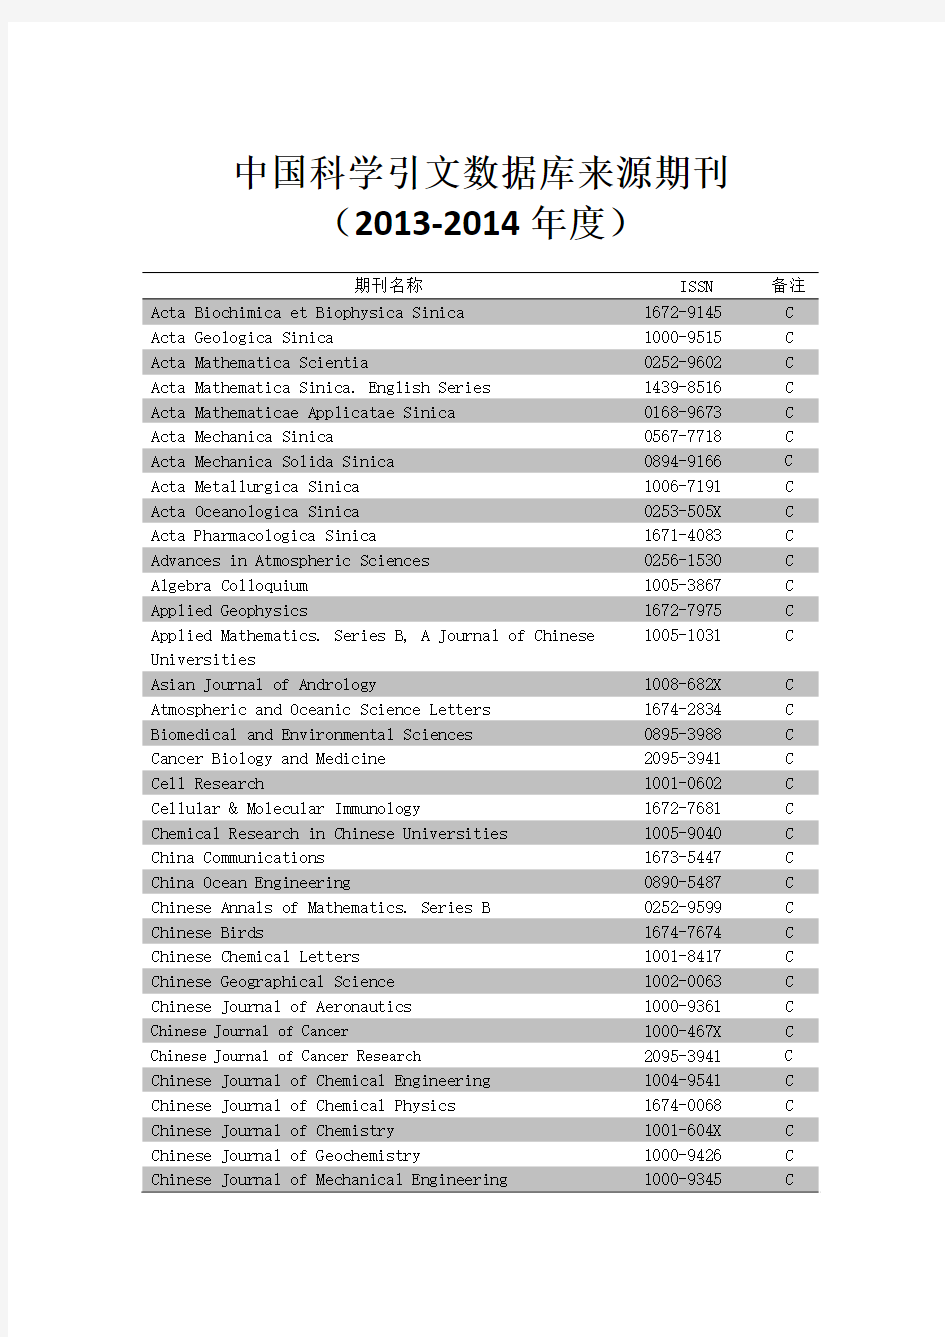 CSCD中文核心期刊目录2013-2014